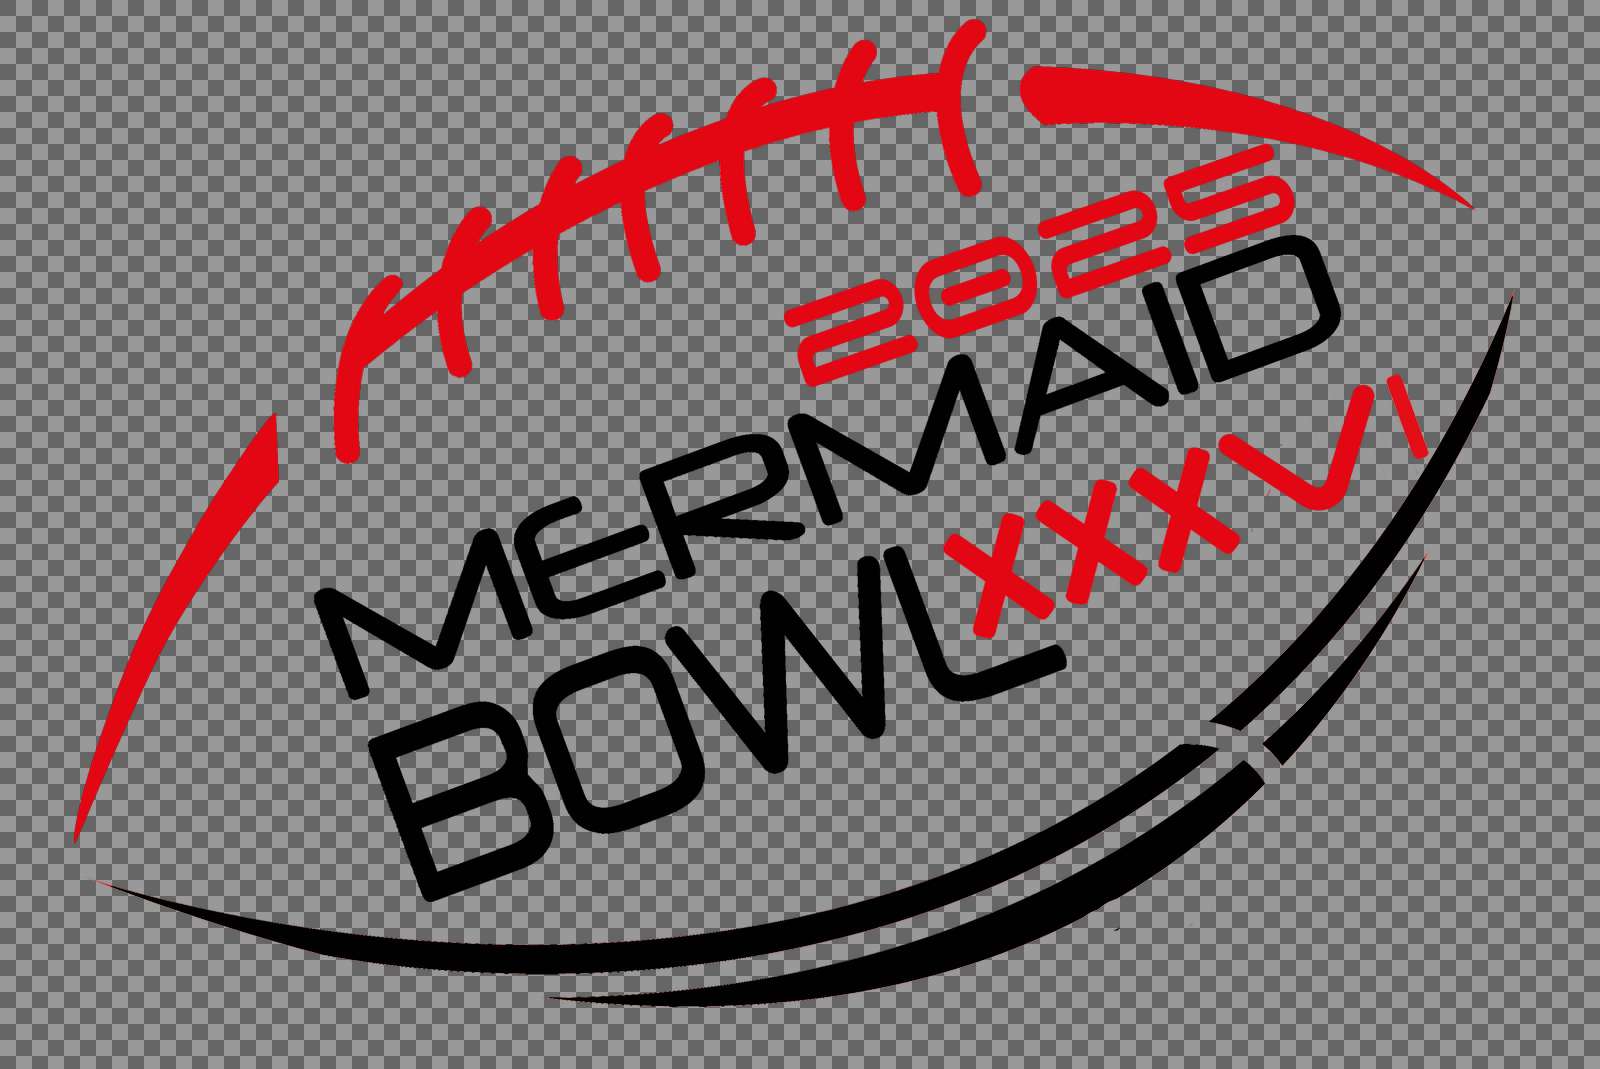 MermaidBowl logo 2025